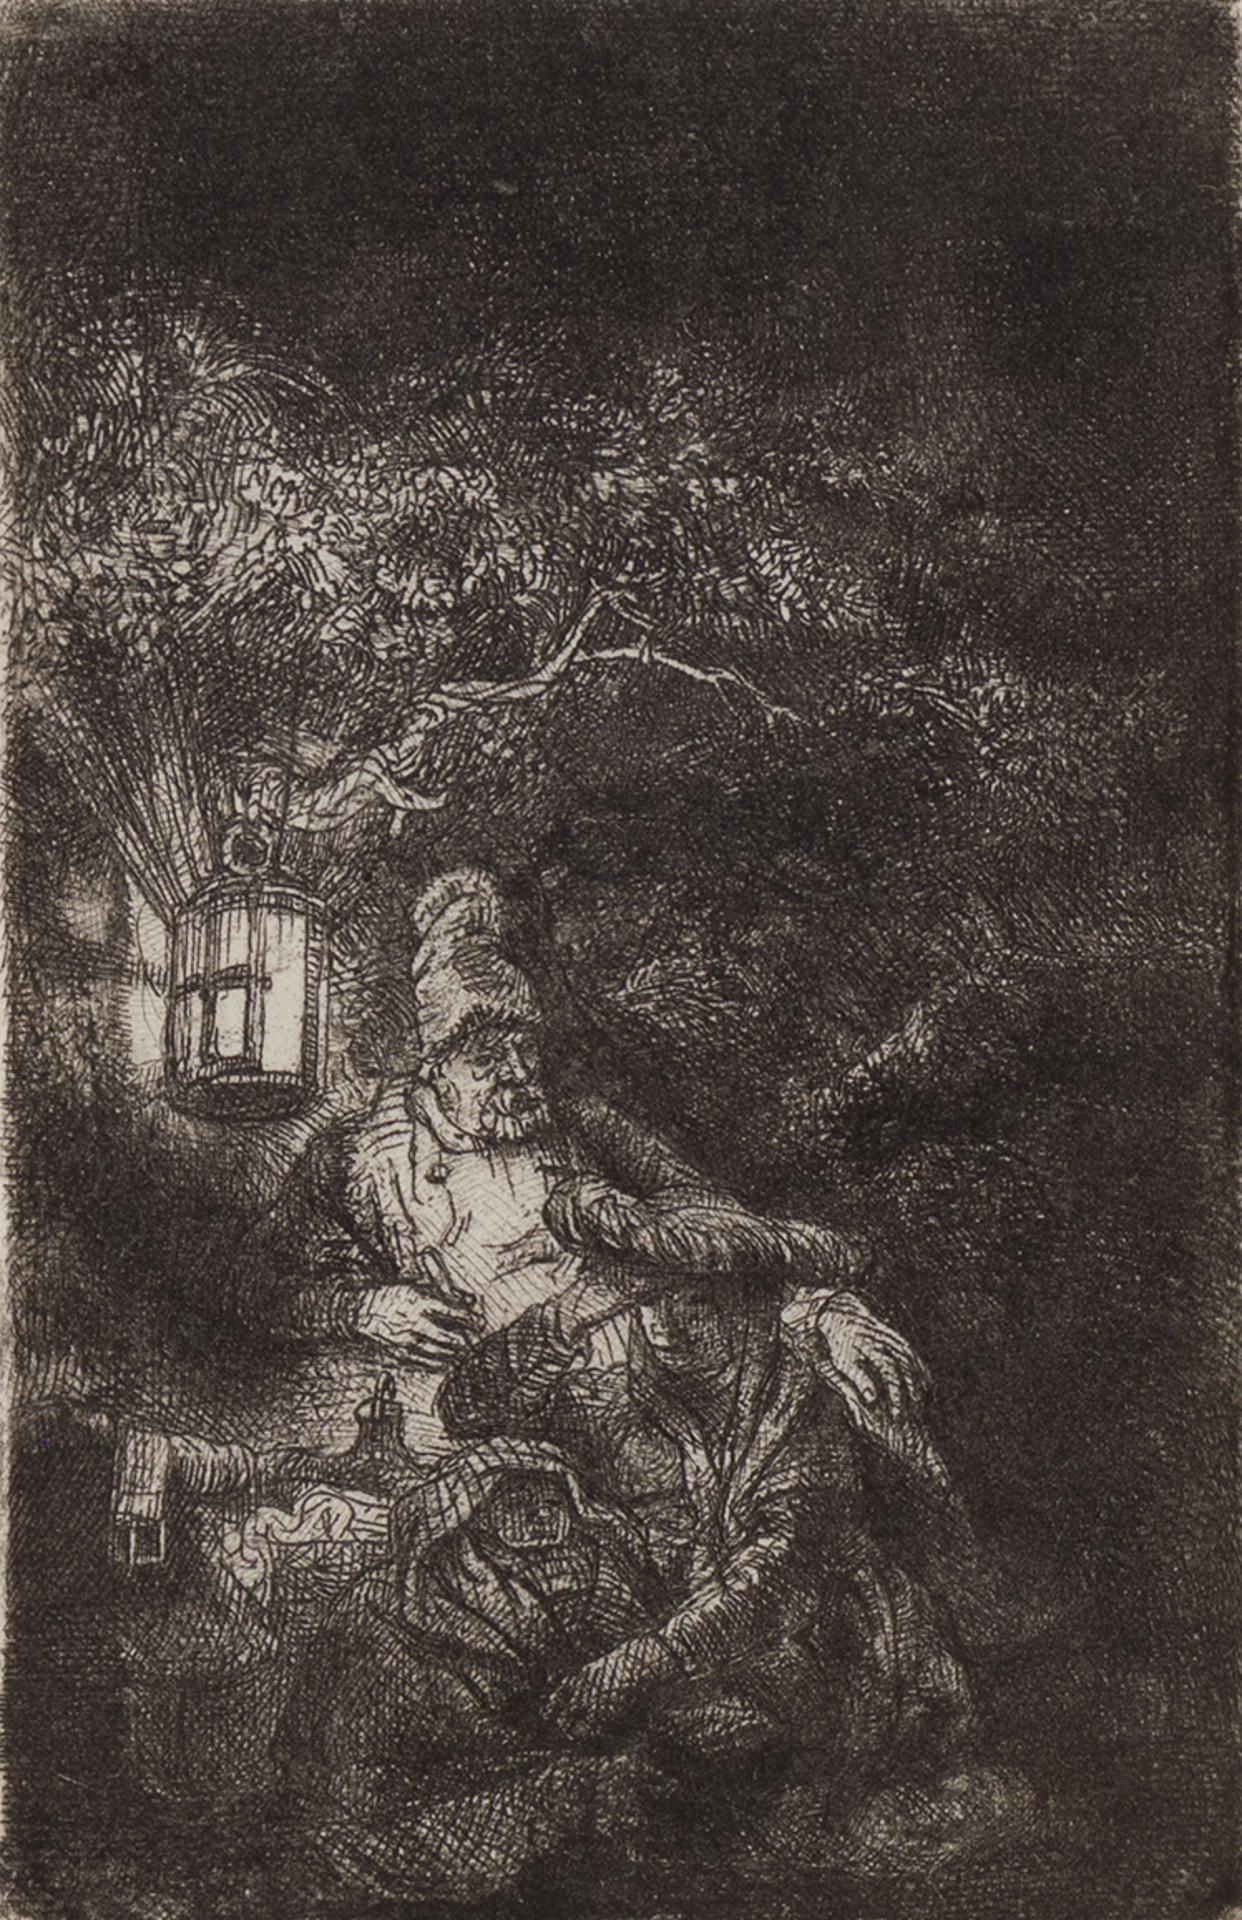 Rembrandt Harmenszoon van Rijn (1606-1669) - A Night Piece (B., Holl. 57; H. 208; BB 44-2)